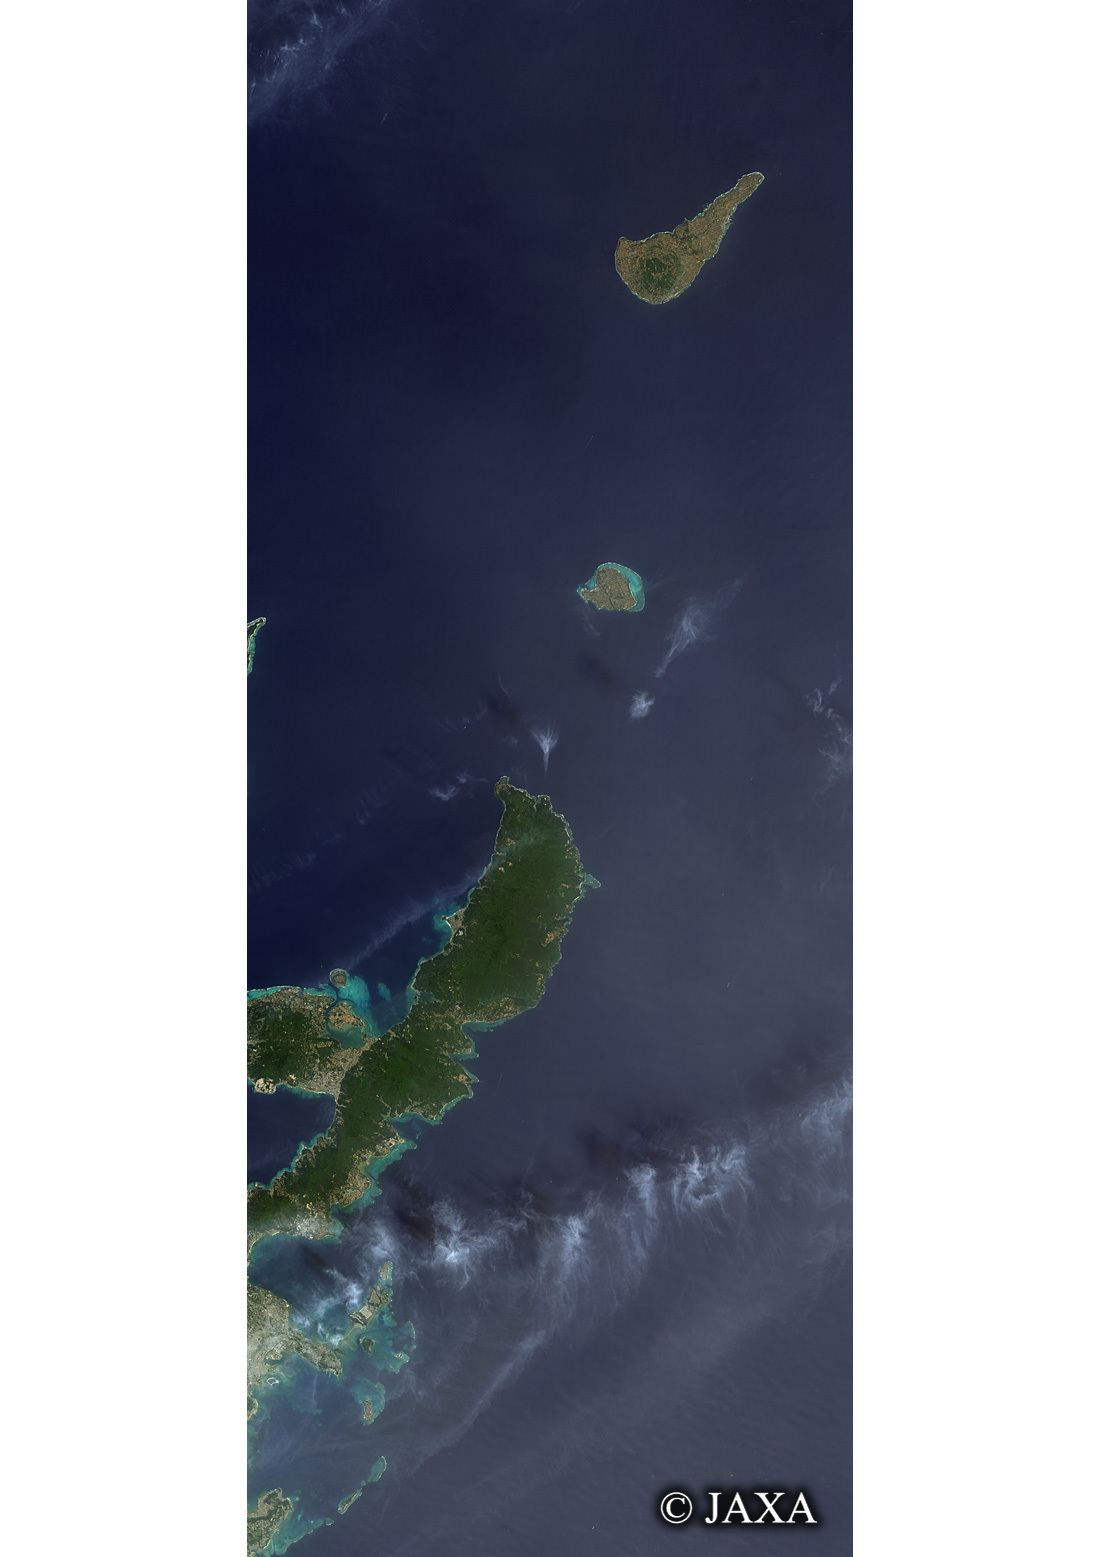 だいちから見た日本の都市 沖縄諸島:衛星画像